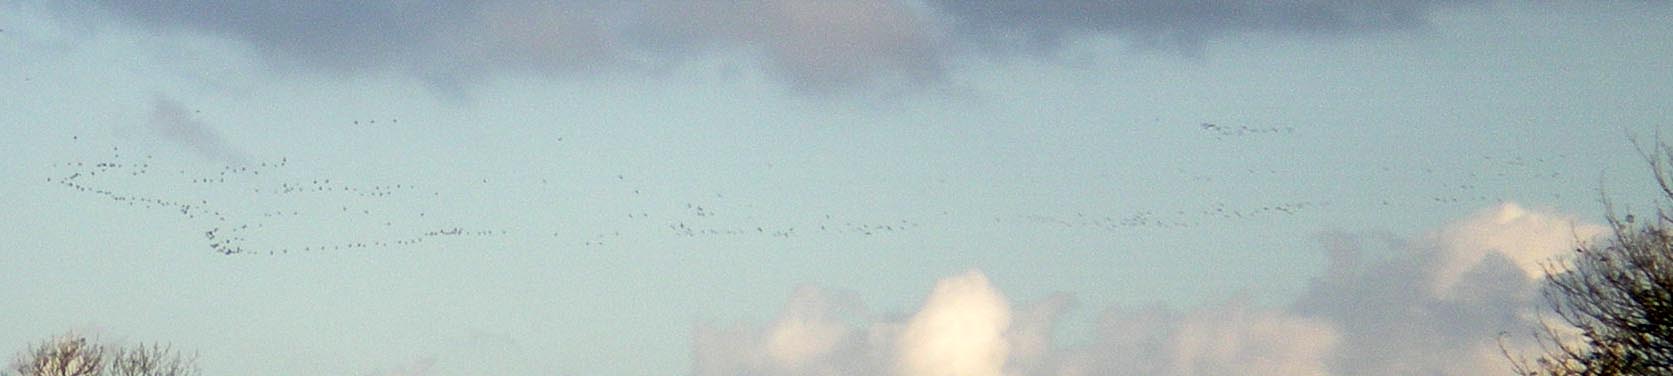 geese-flying.jpg